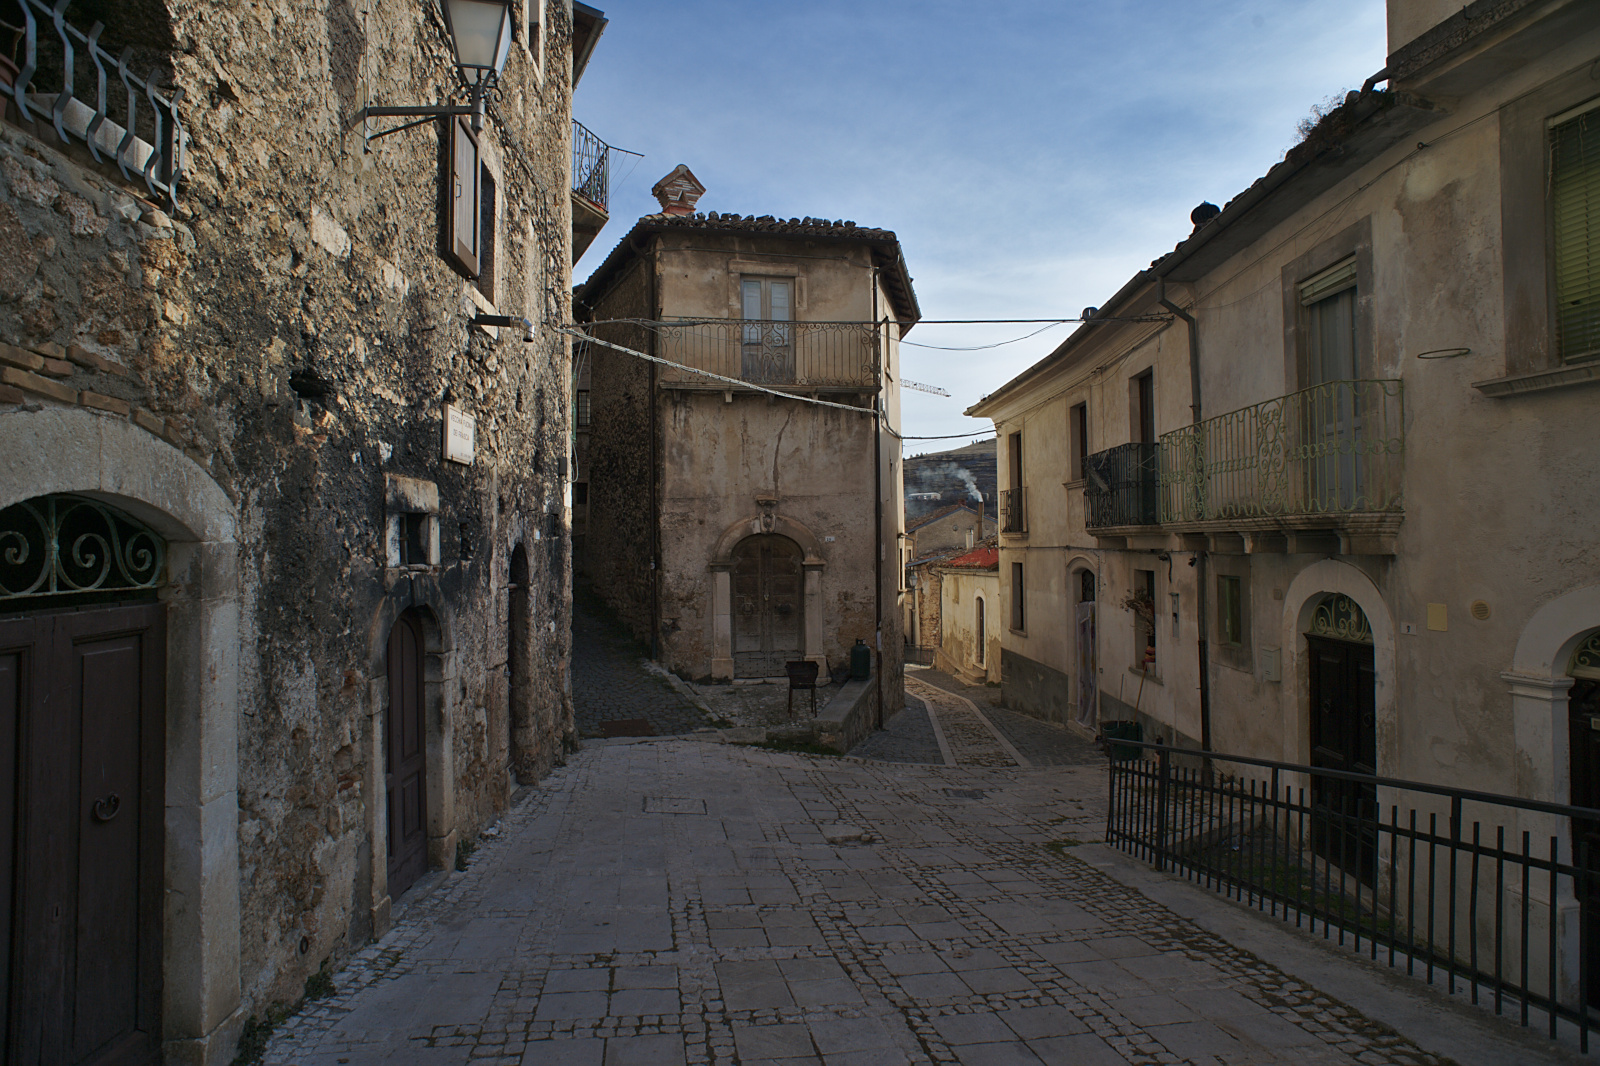 In the village of Calascio...